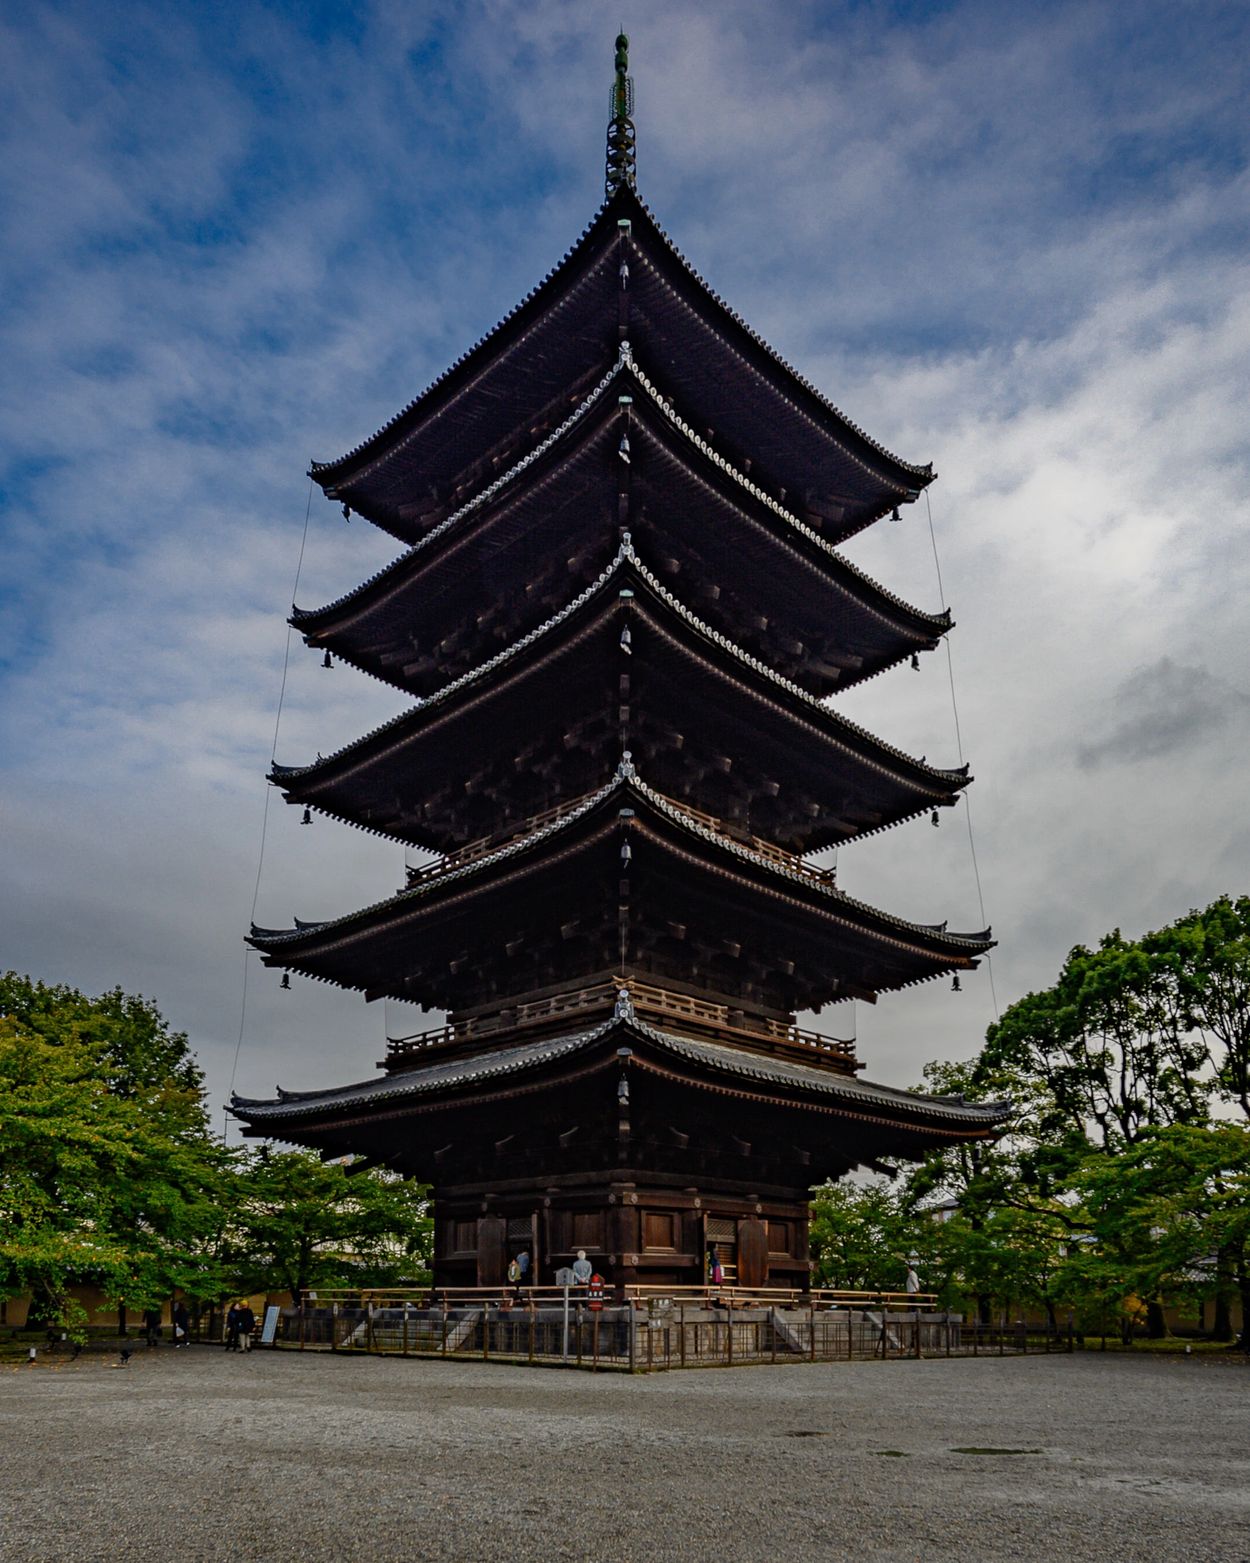 Pagoda at Toji Temple, Kyoto, Japan.